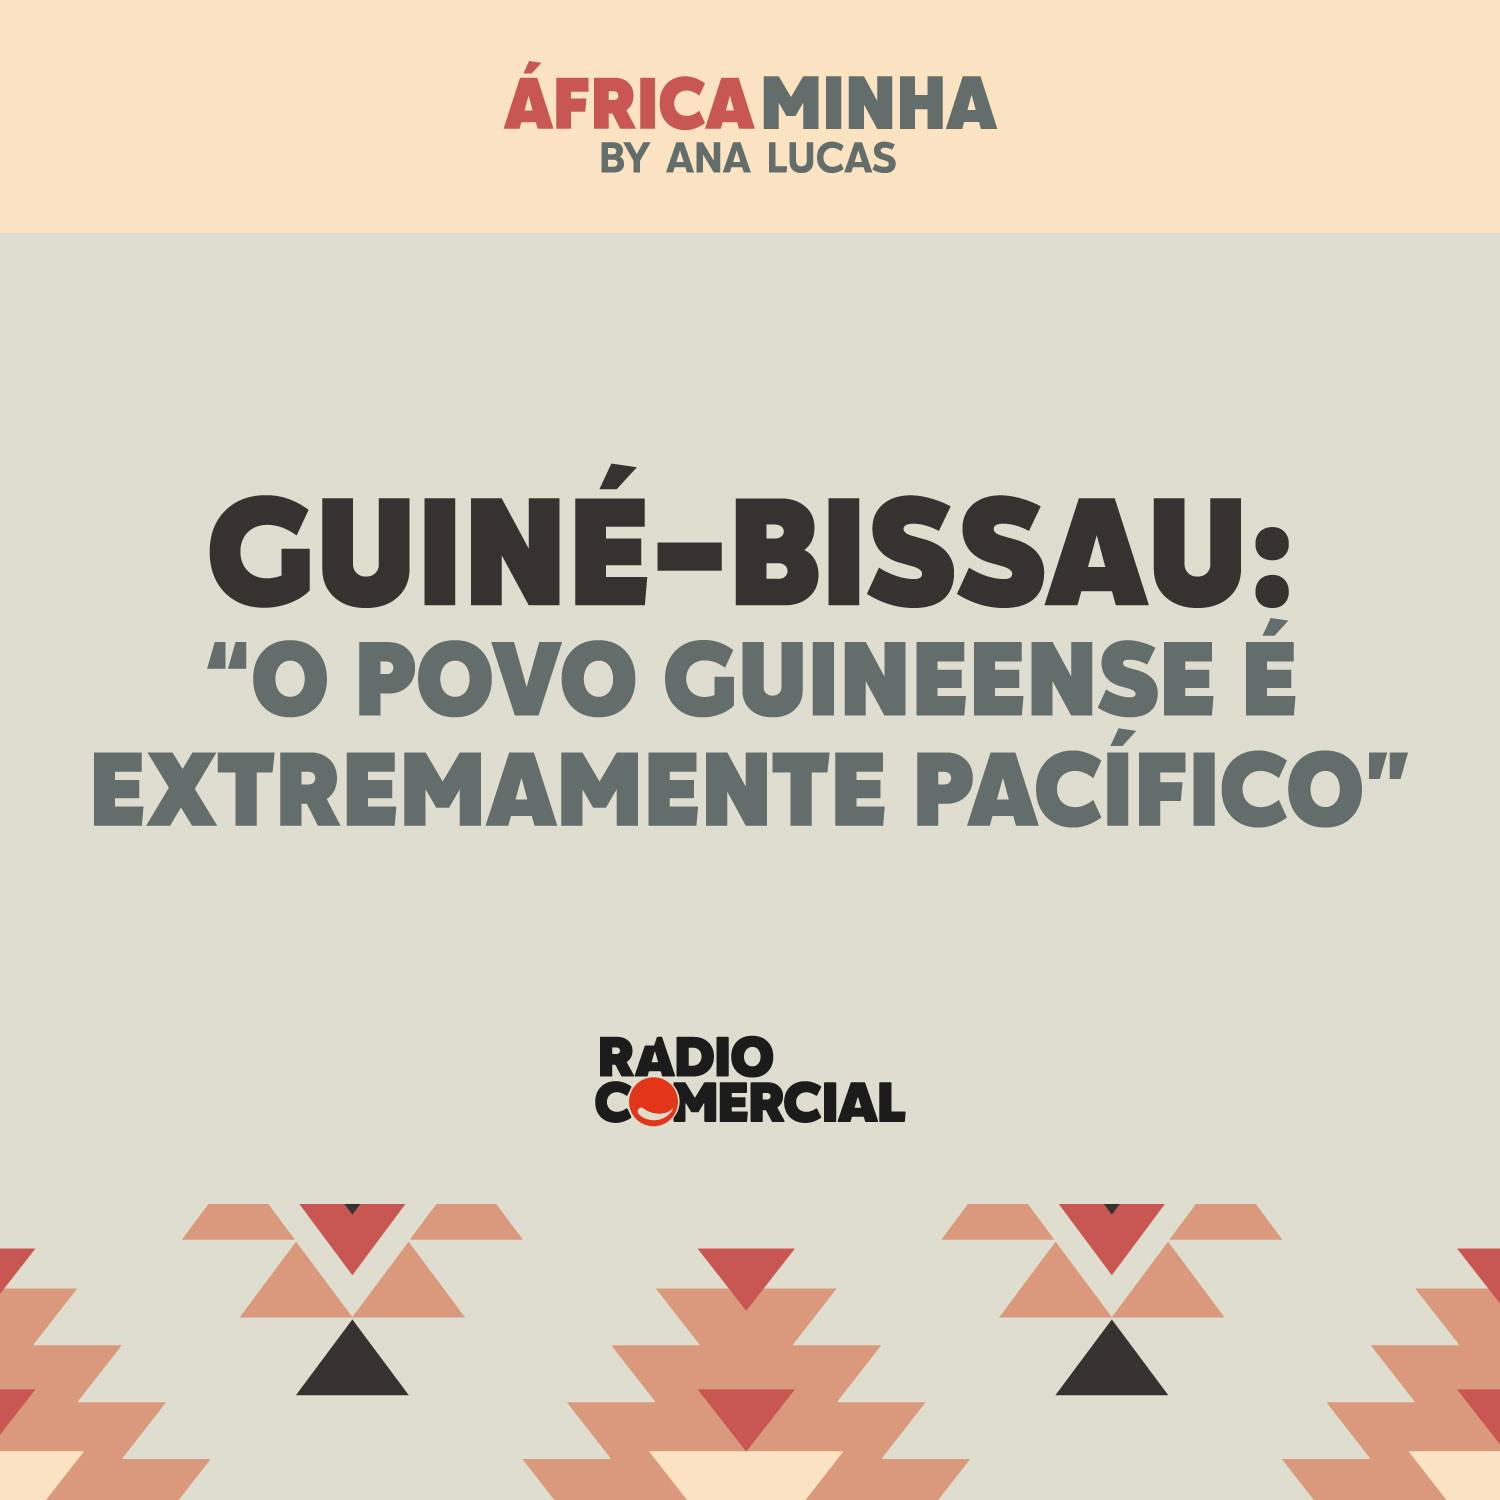 Guiné-Bissau: "o povo guineense é extremamente pacífico"